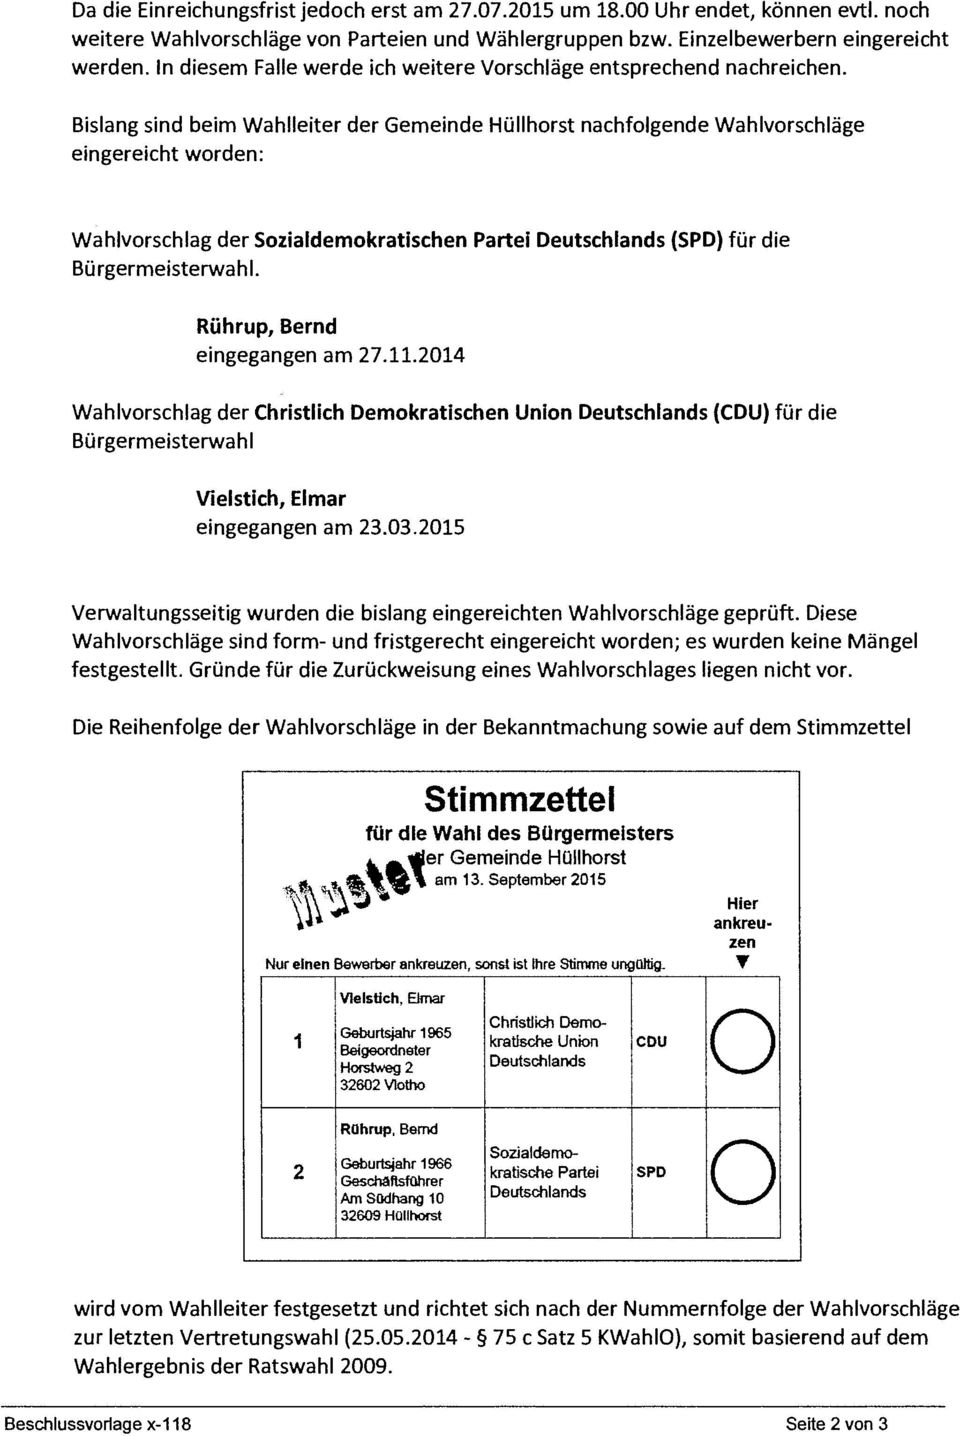 Bislang sind beim Wahlleiter der Gemeinde Hüllhorst nachfolgende Wahlvorschläge eingereicht worden: Wahlvorschlag der Sozialdemokratischen Partei Deutschlands (SPD) für die Bürgermeisterwahl.